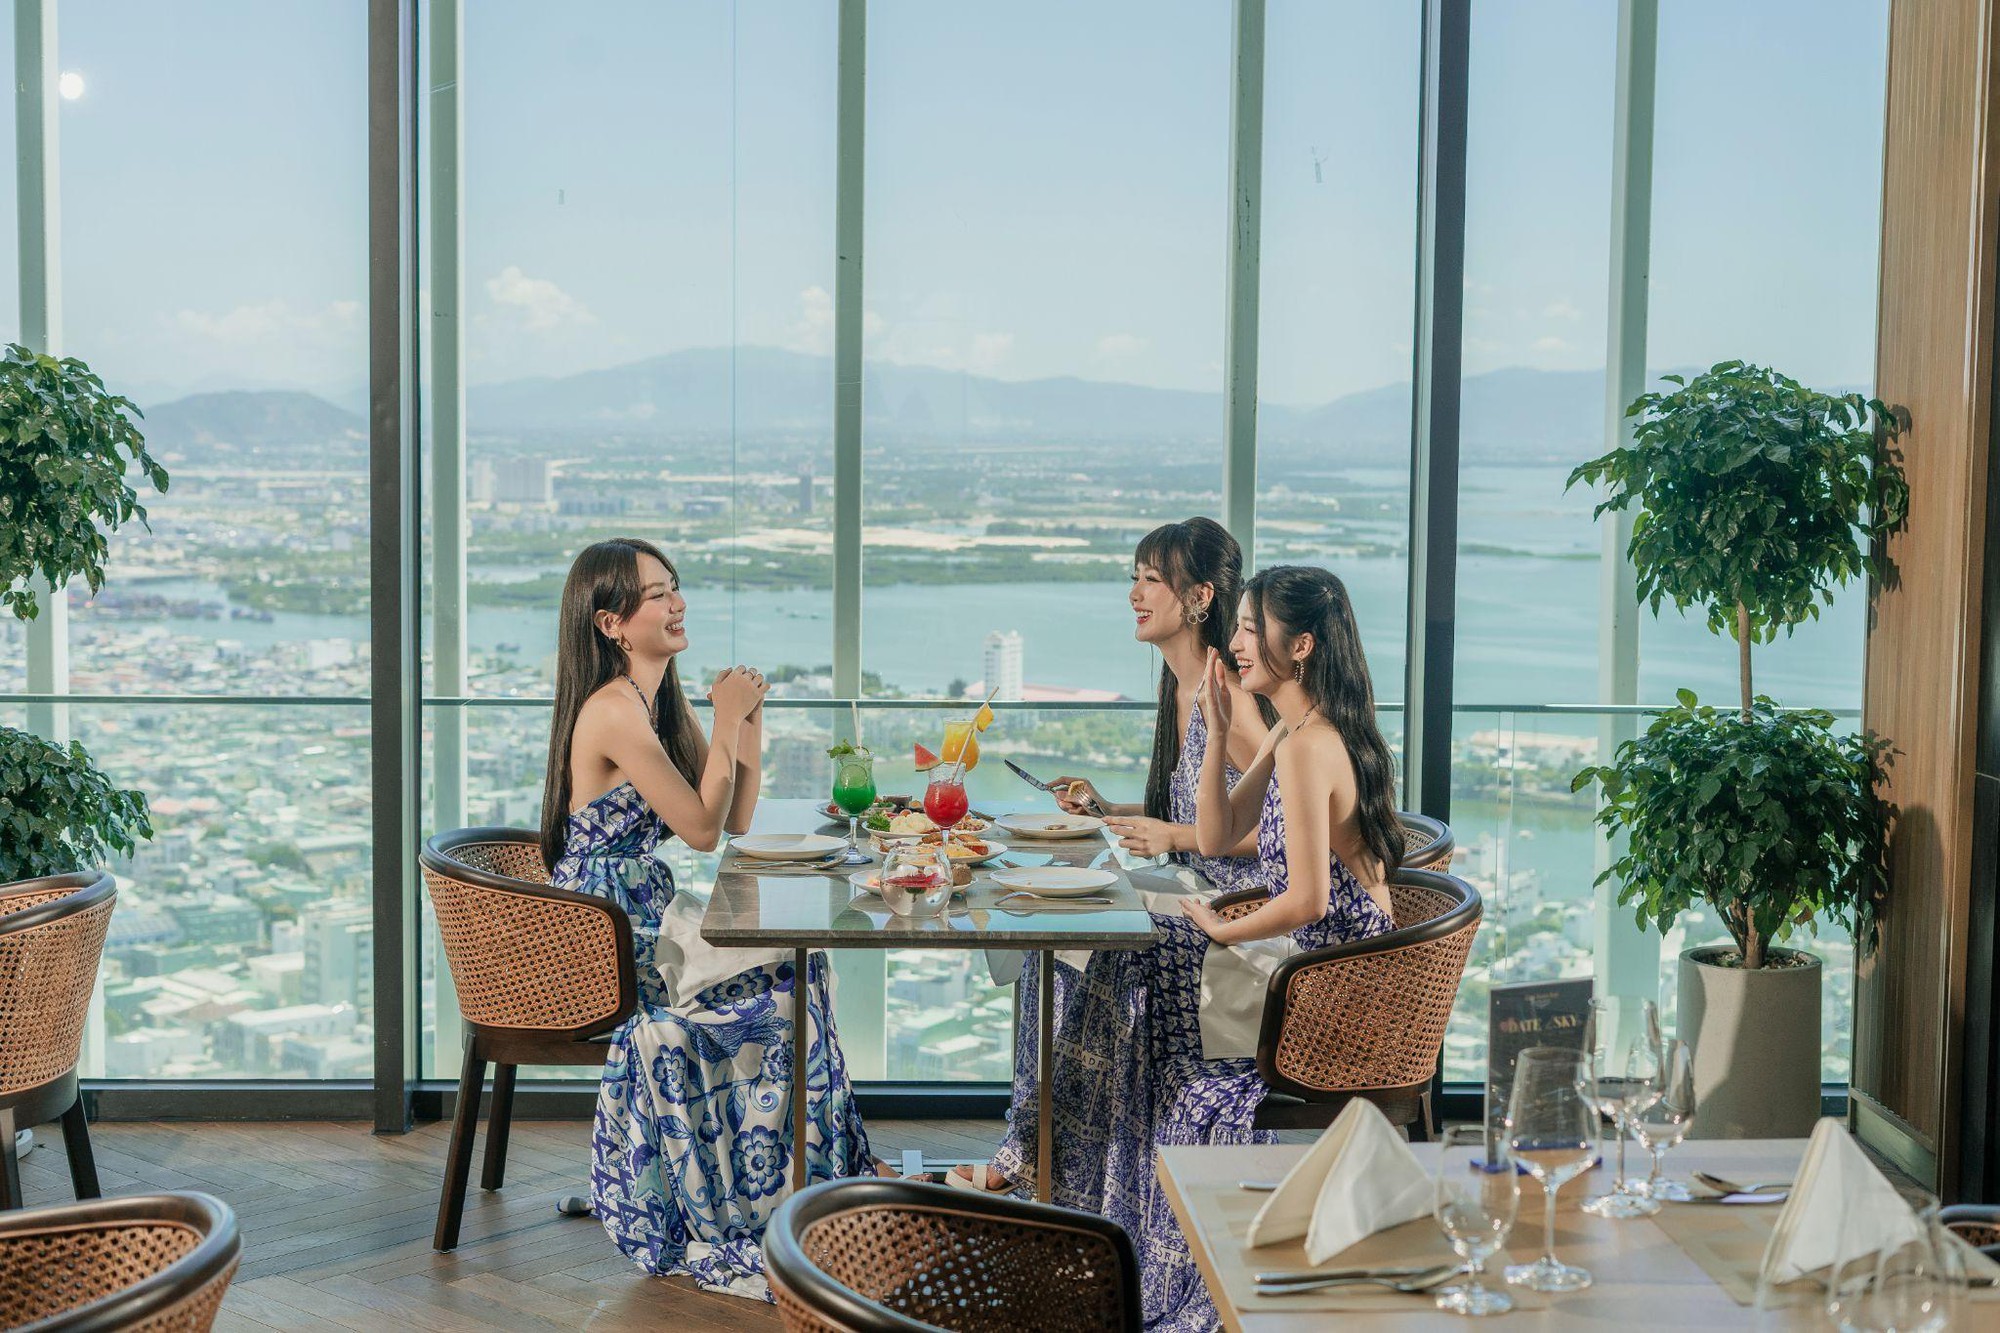 GRAND HYAMS HOTEL - Quy Nhon Beach: tận hưởng kiến trúc phồn hoa giao thoa cùng thiên nhiên hùng vĩ - Ảnh 7.